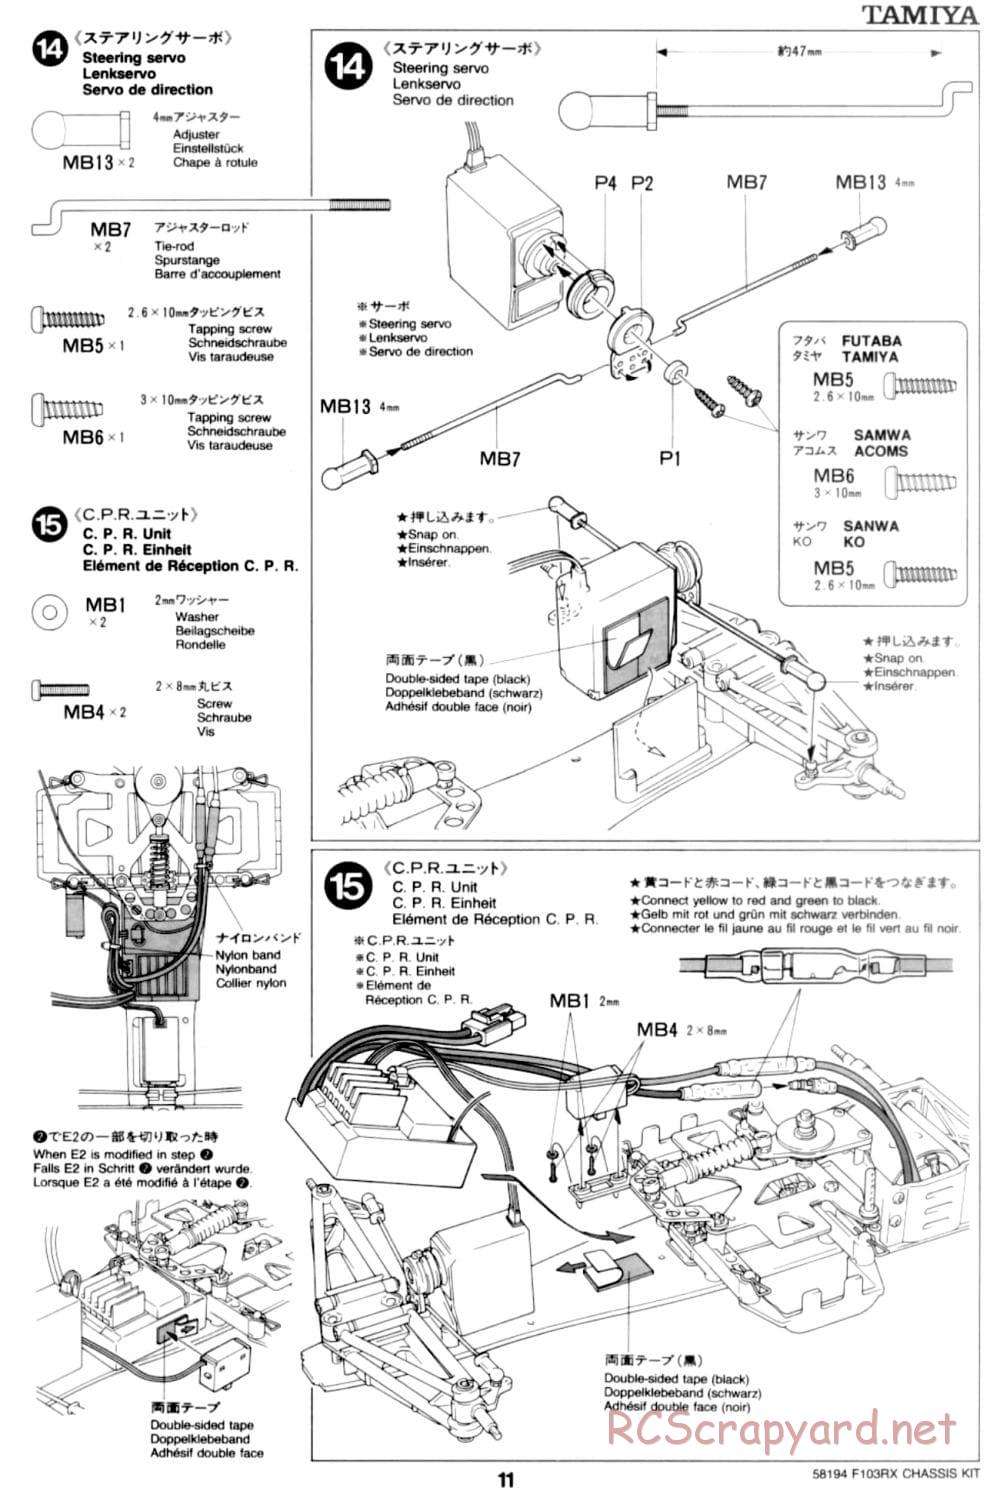 Tamiya - F103RX Chassis - Manual - Page 11